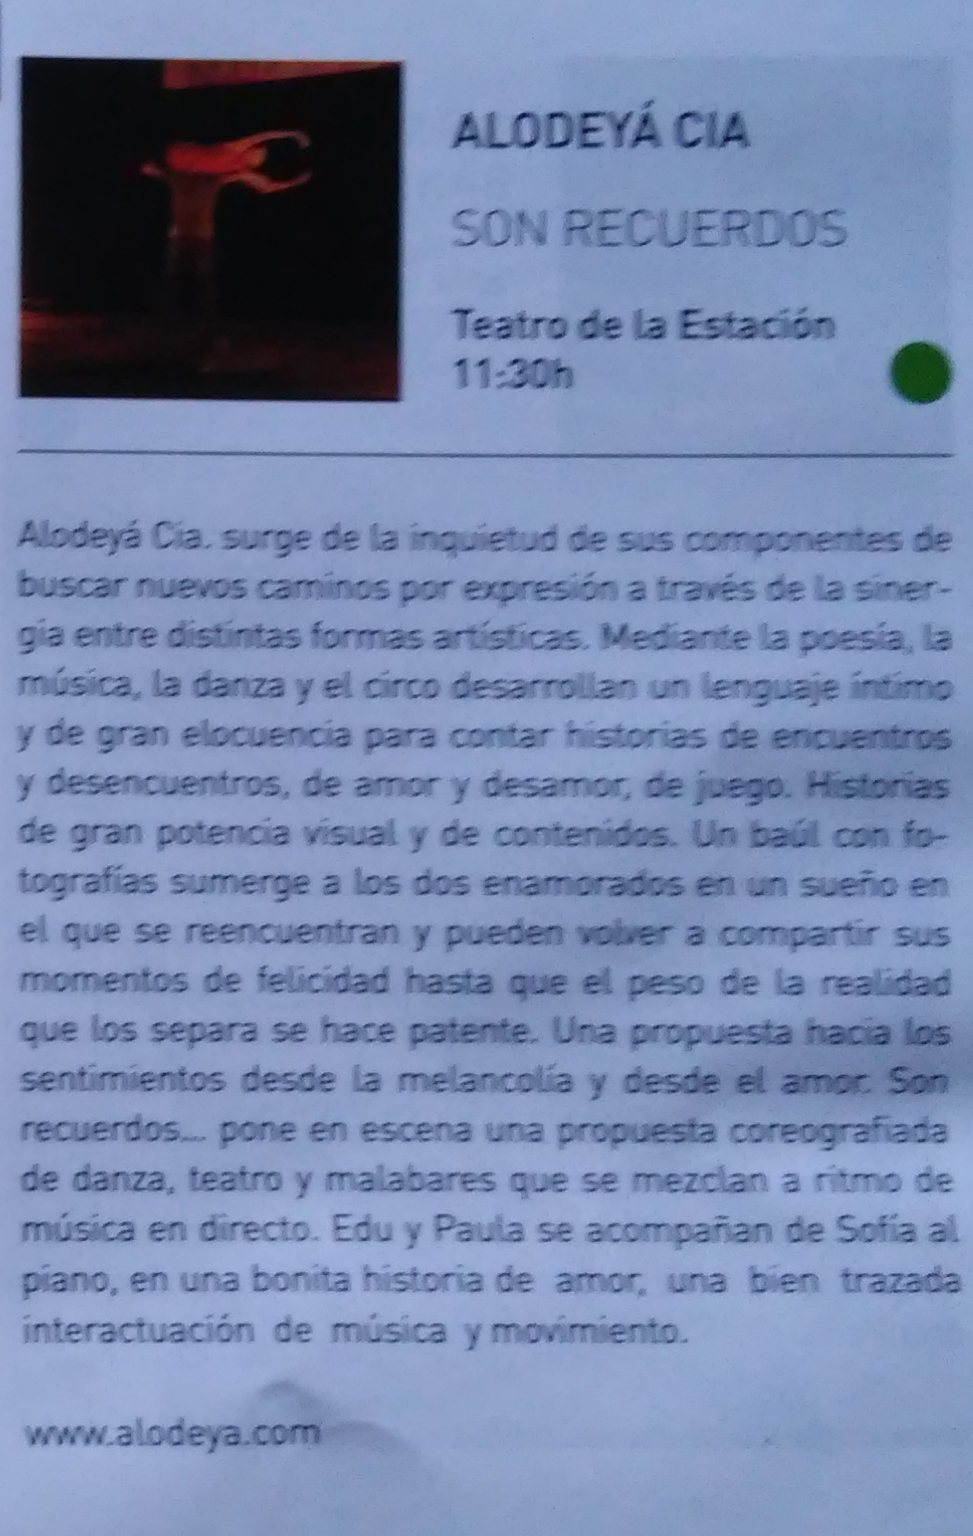 Alodeyá en el Artez (número 199) con motivo del Mercado de Artes Escénicas, Septiembre 2014